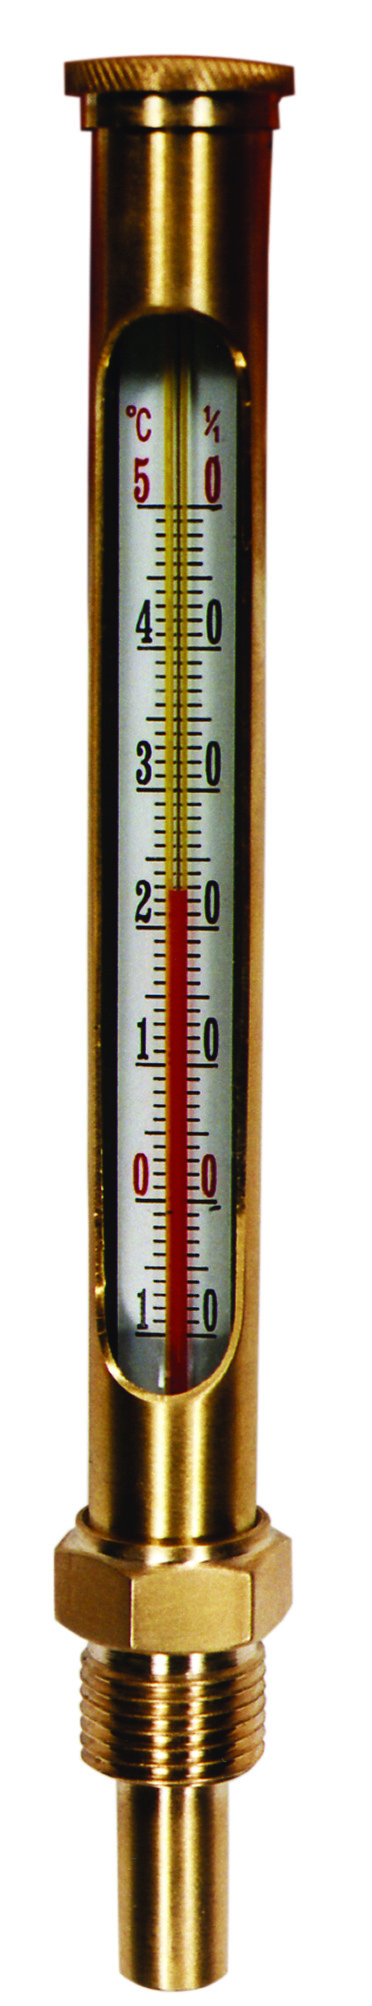 Thermomètre vertical pour chaudière - Droit Long. 160 mm Long. Plonge 45 mm 0 à 130°C